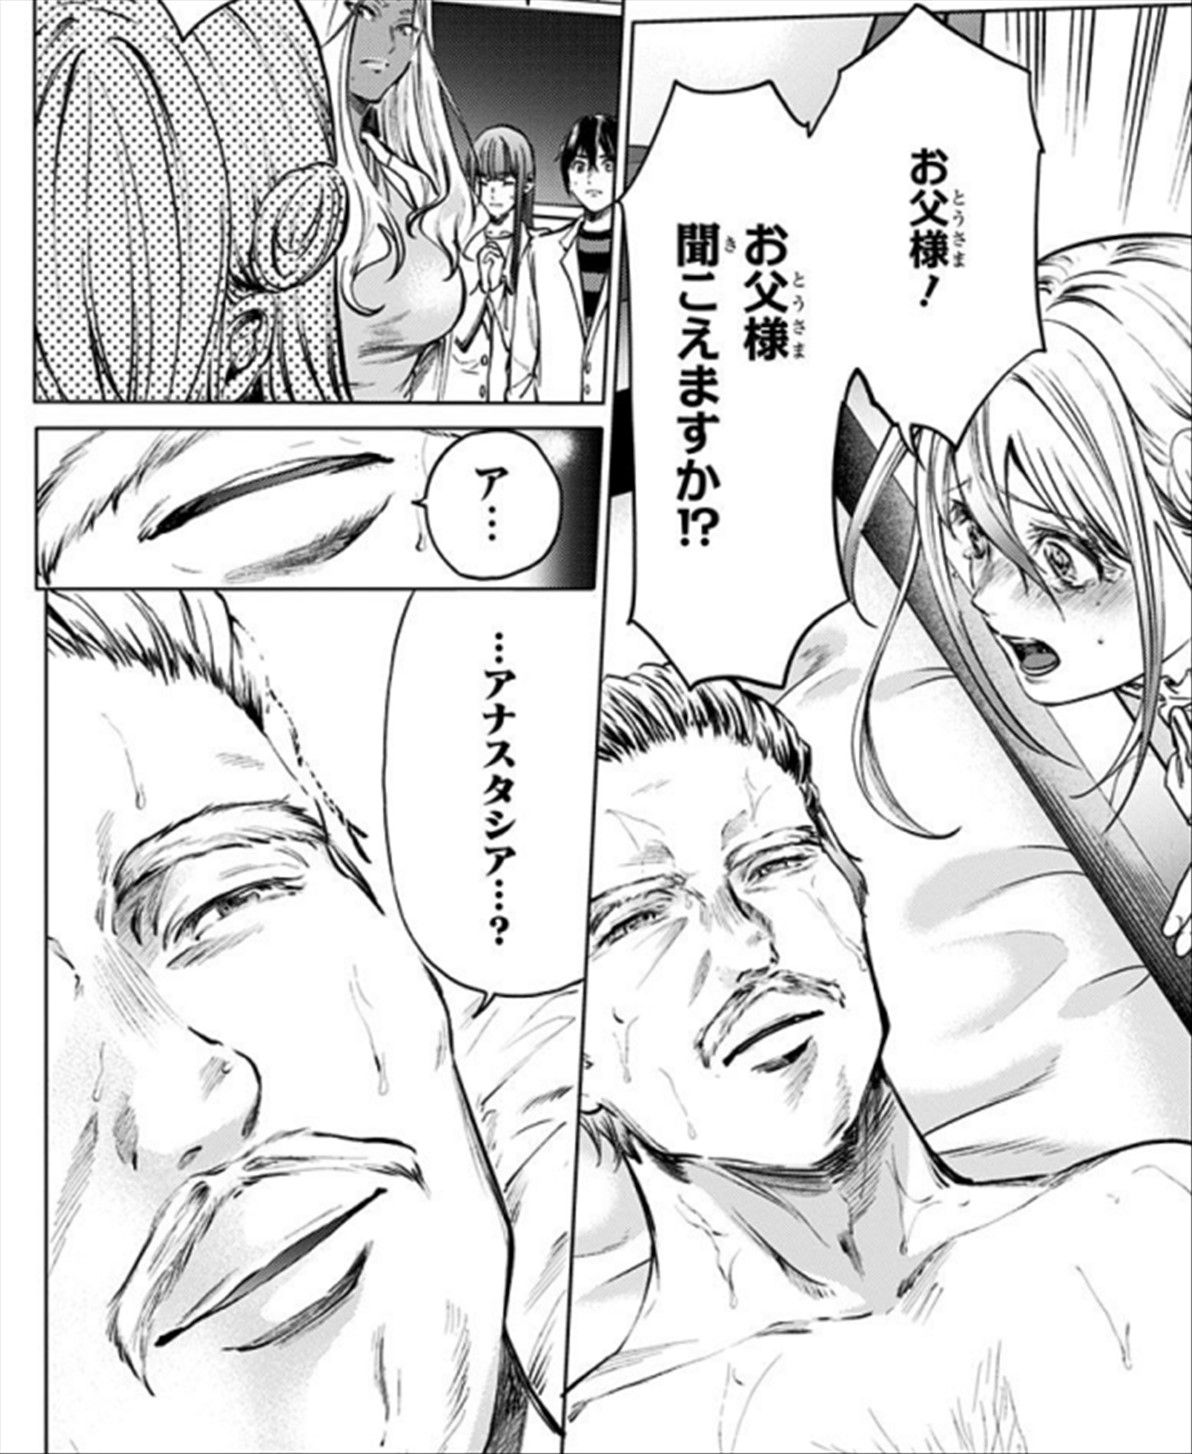 Shuumatsu No Harem Ero Manga Rolls Around With Naked Maids Sankaku